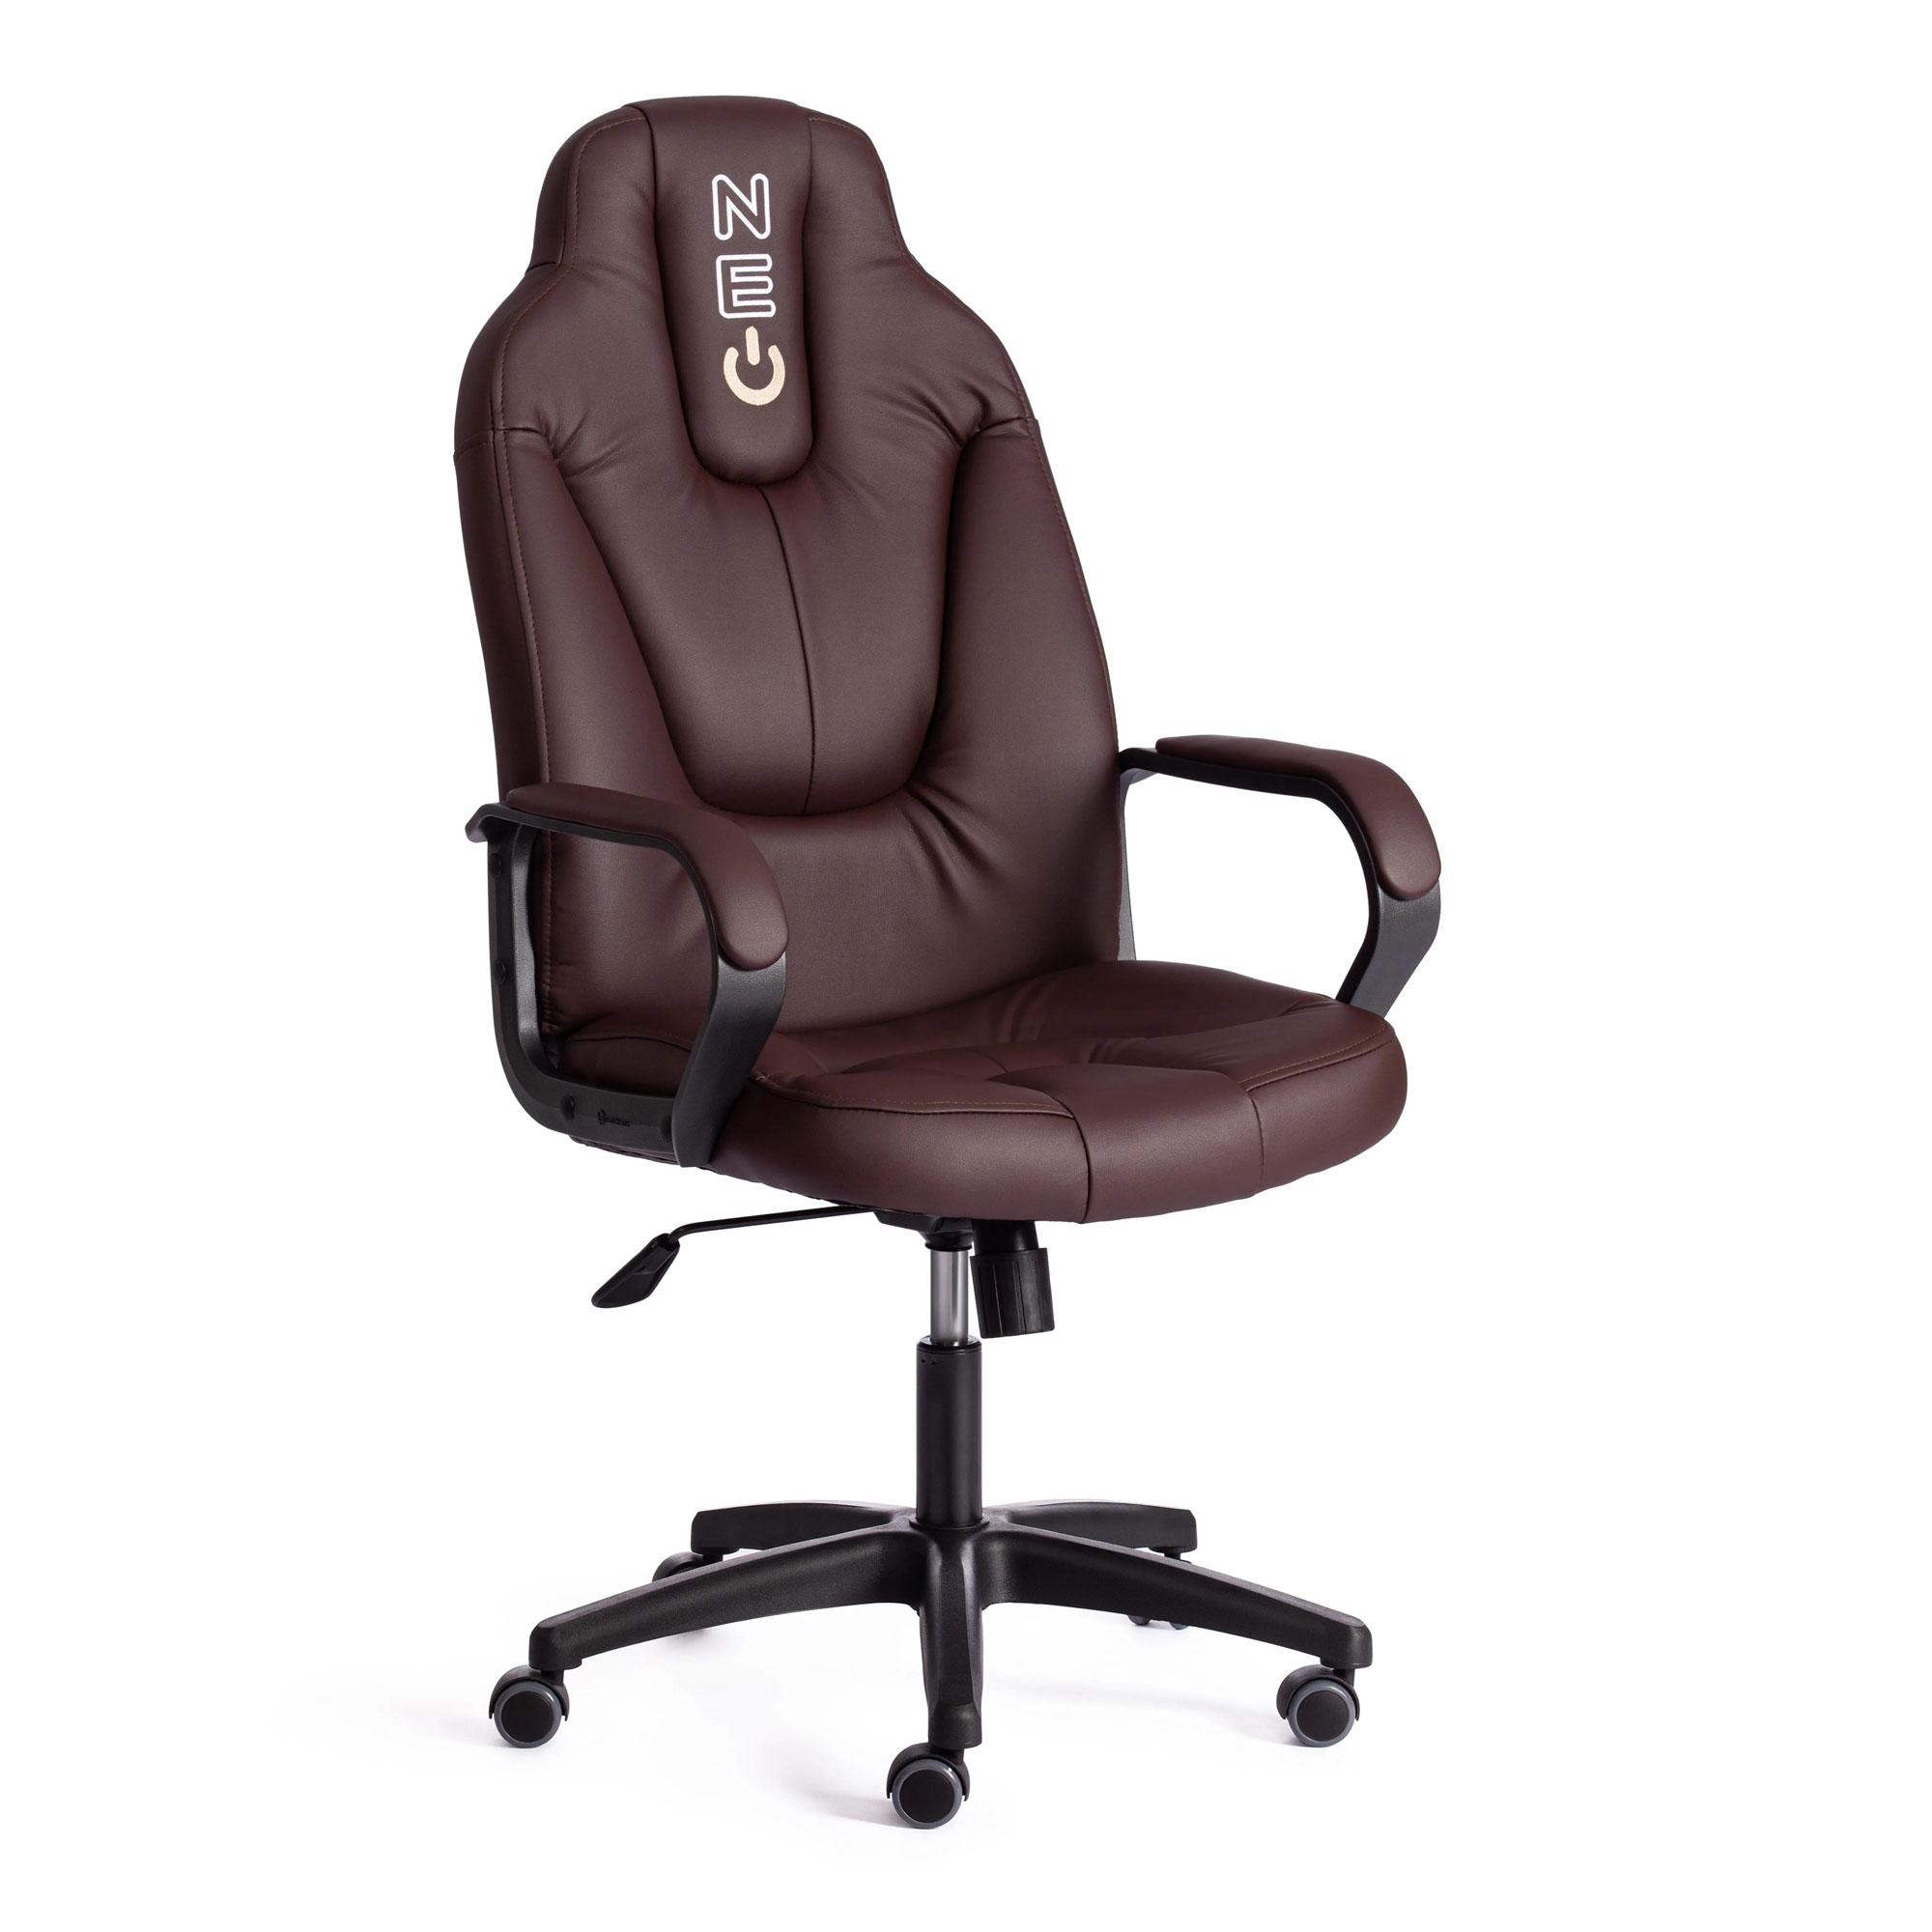 Кресло компьютерное TC Neo искусственная кожа коричневое 64х49х122 см кресло компьютерное tc driver искусственная кожа коричневое с бронзовым 55х49х126 см